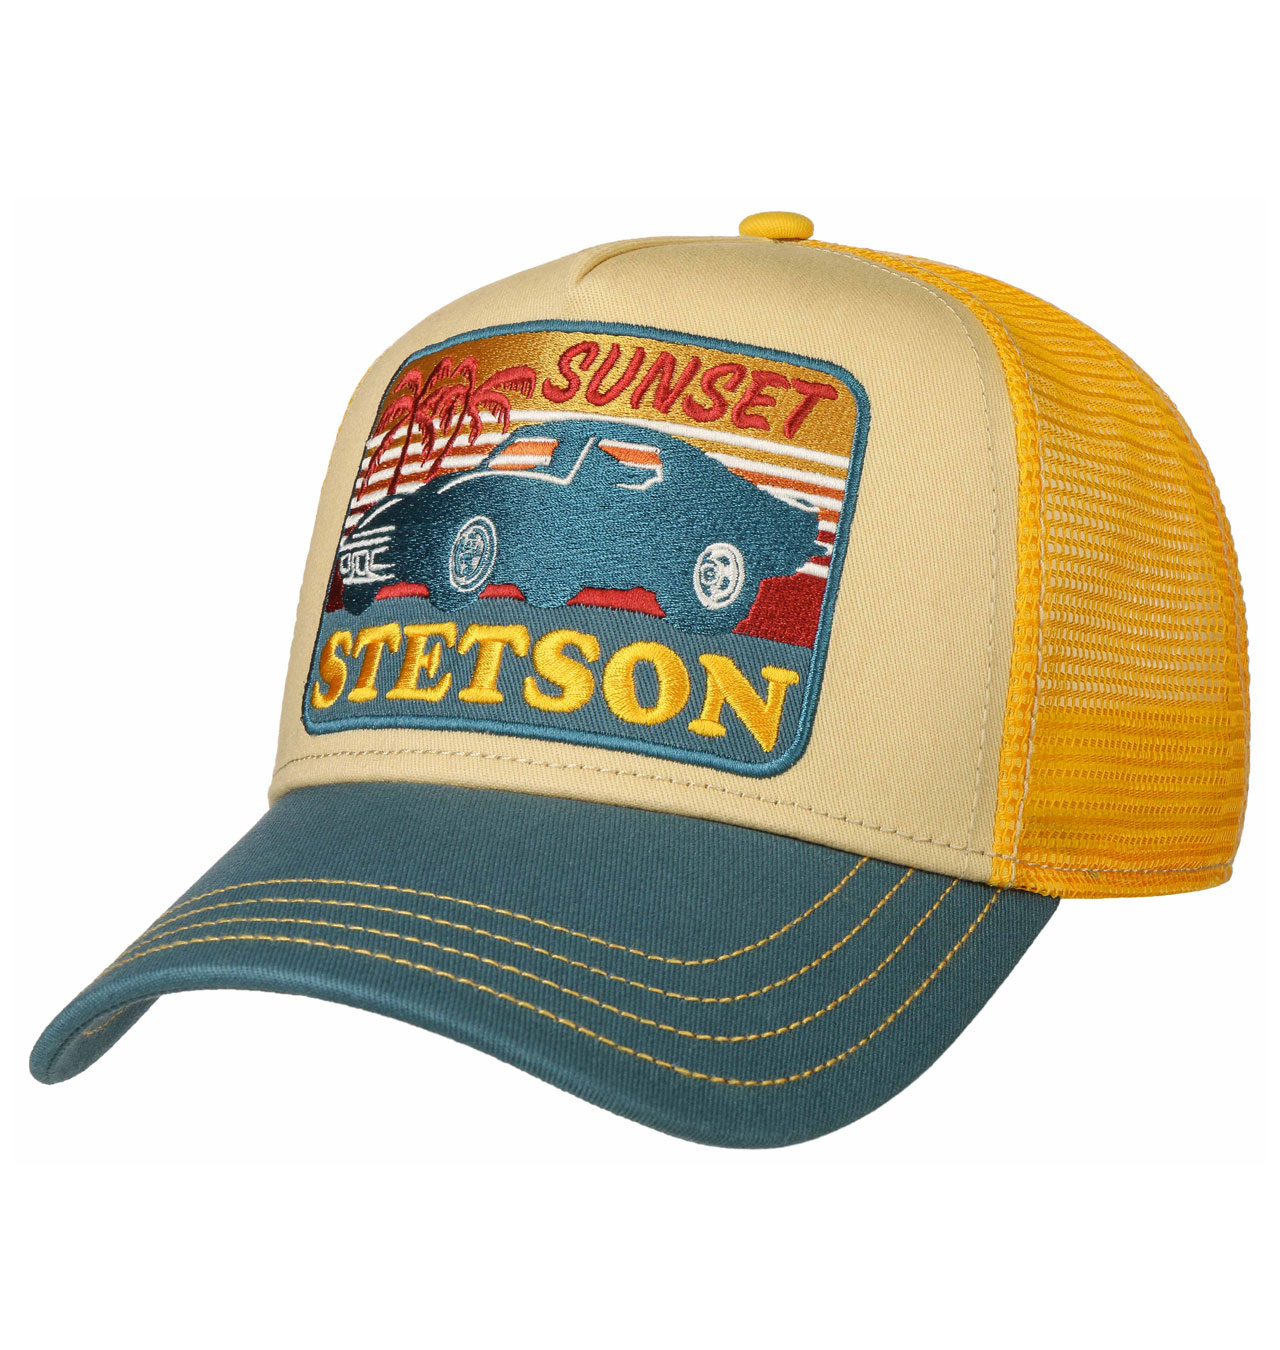 Stetson---Sunset-Trucker-Cap---Yellow